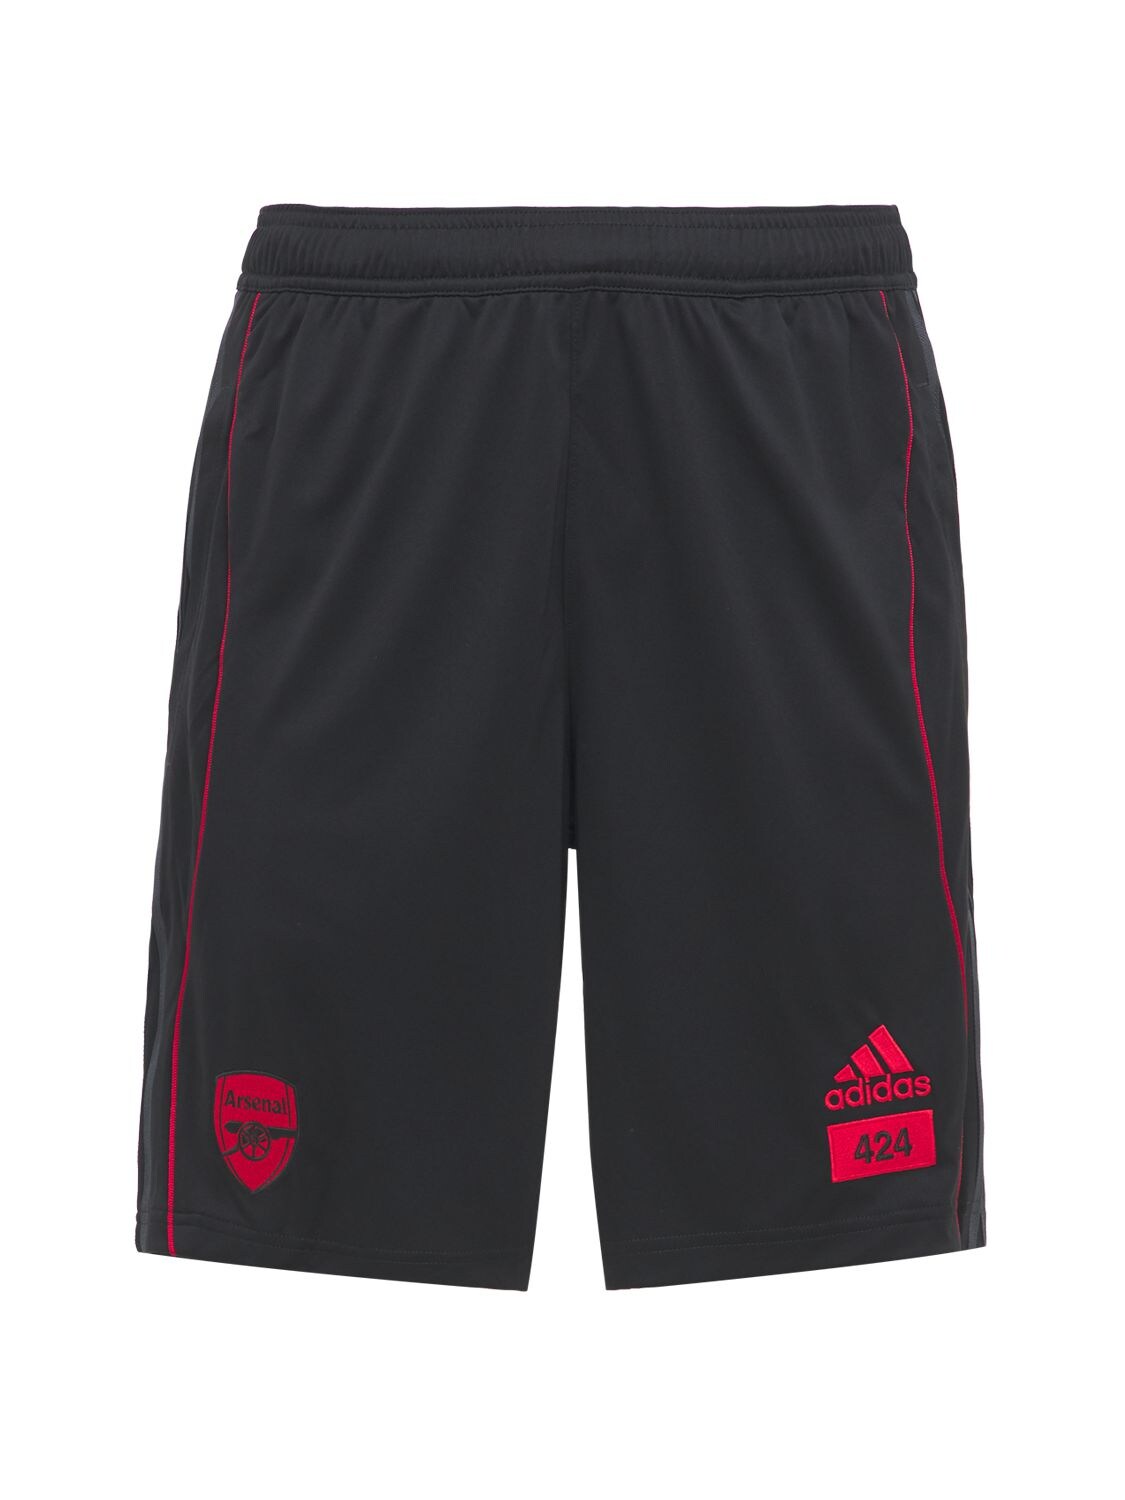 Adidas Originals Statement Afc X 424 Shorts In Black